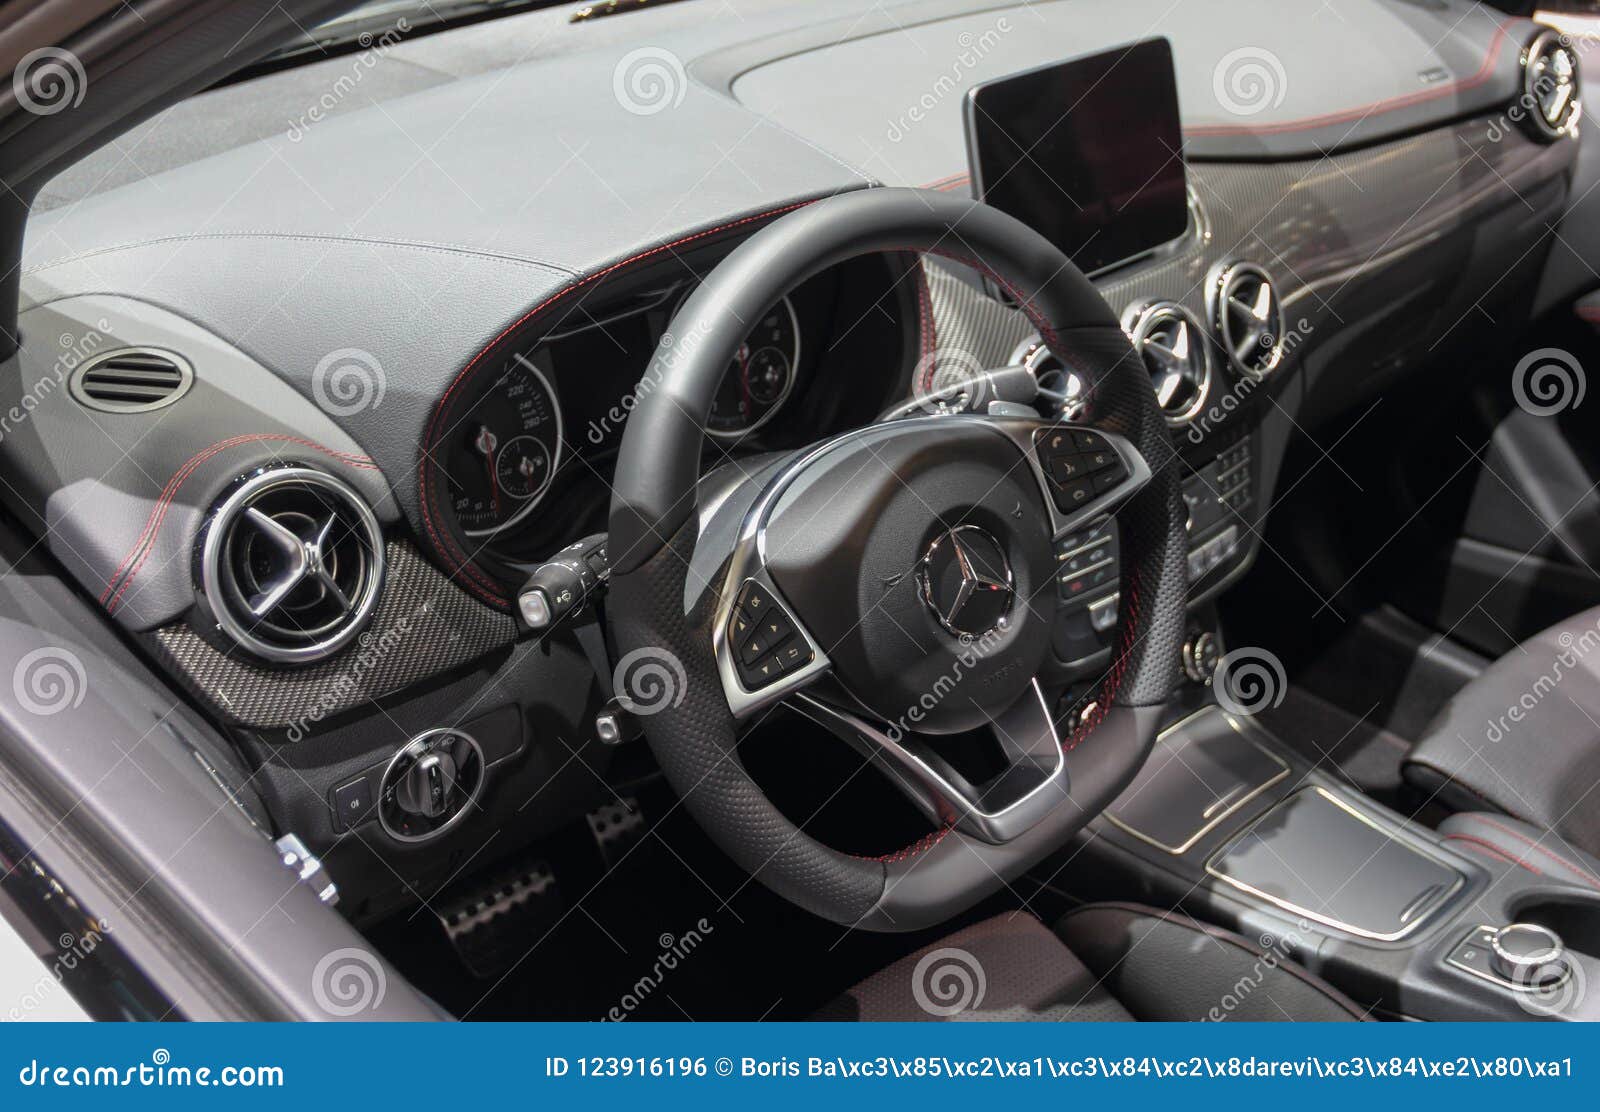 Switzerland Geneva March 8 2018 The Mercedes Benz Suv